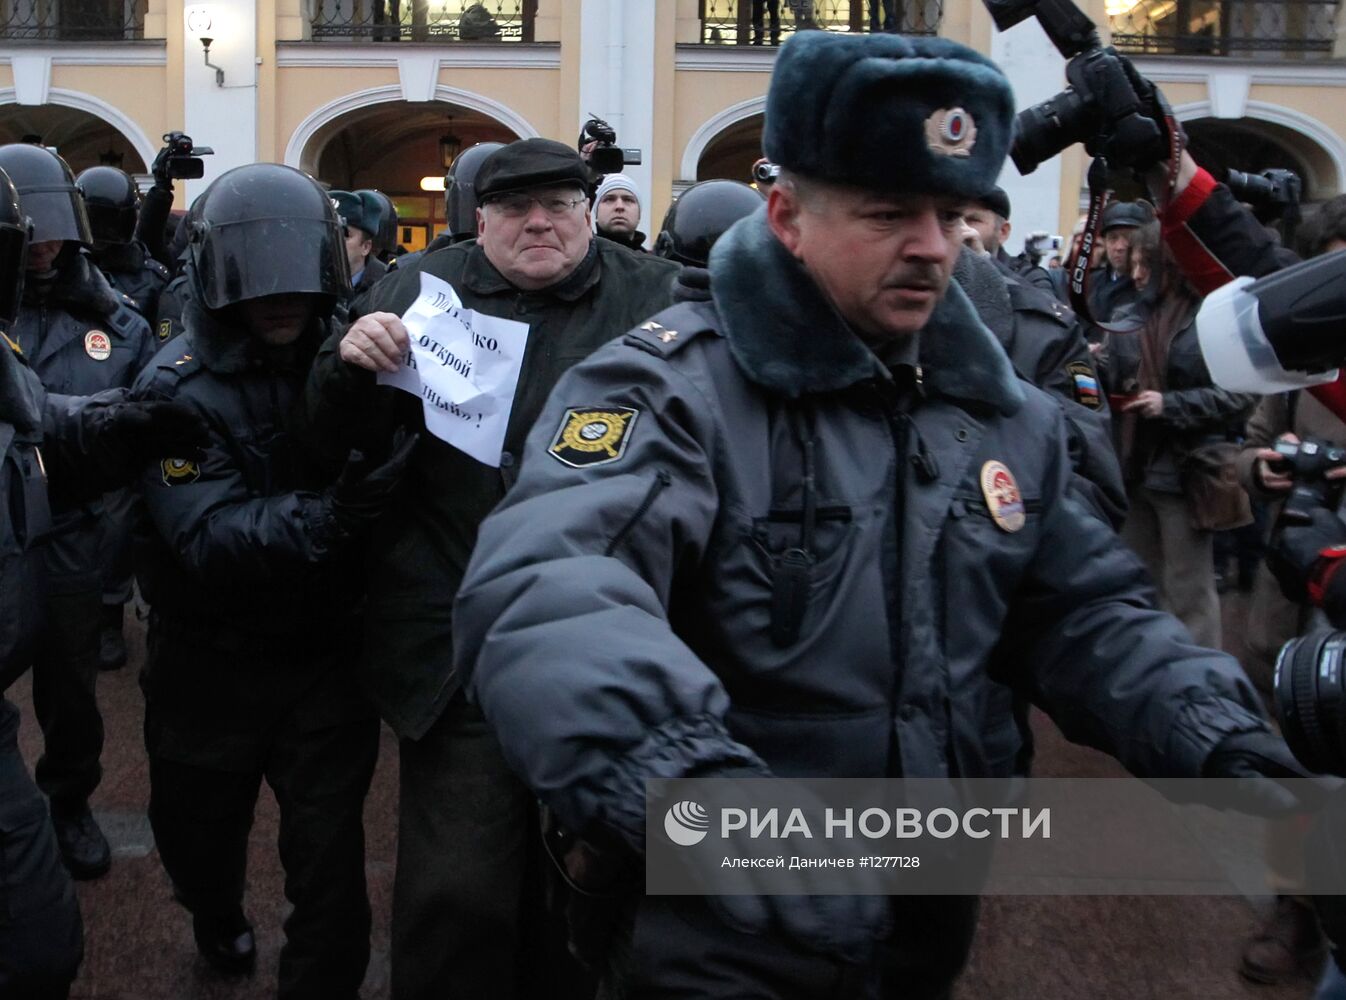 Задержание участников акции "Стратегия-31" в Санкт-Петербурге